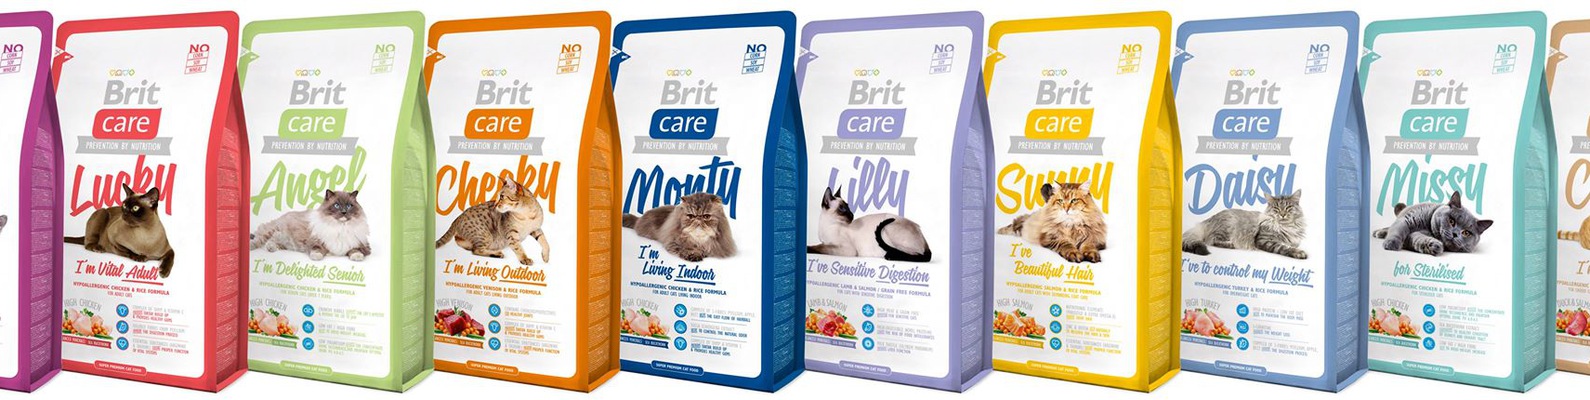 Влажный и сухой корм брит для кошек: состав, отзывы и советы ветеринаров